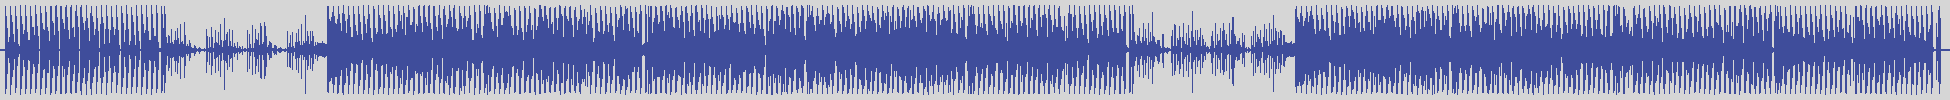 nf_boyz_records [NFY061] Haldo Caldo - B-Baby [Original Mix] audio wave form